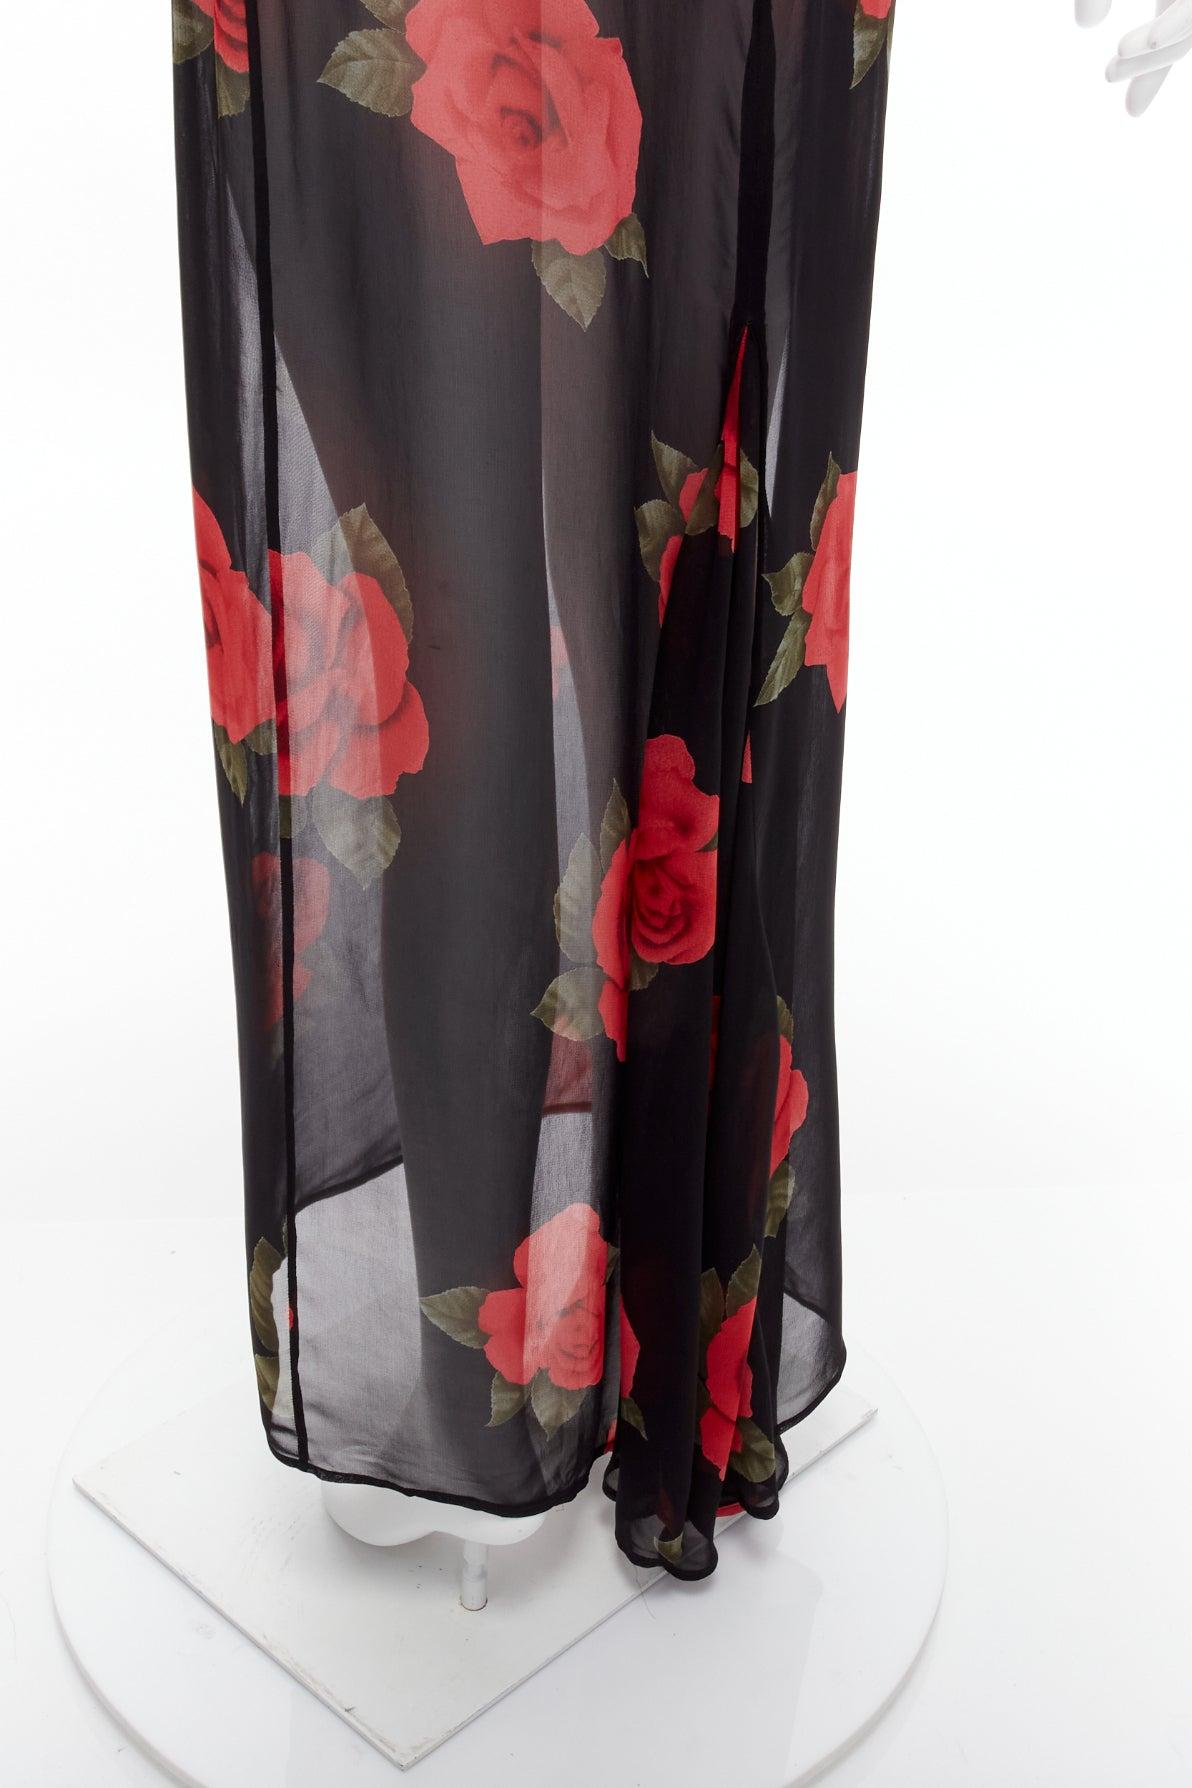 DOLCE GABBANA Vintage sheer red rose dress black cropped sweater vest set IT42 M For Sale 4